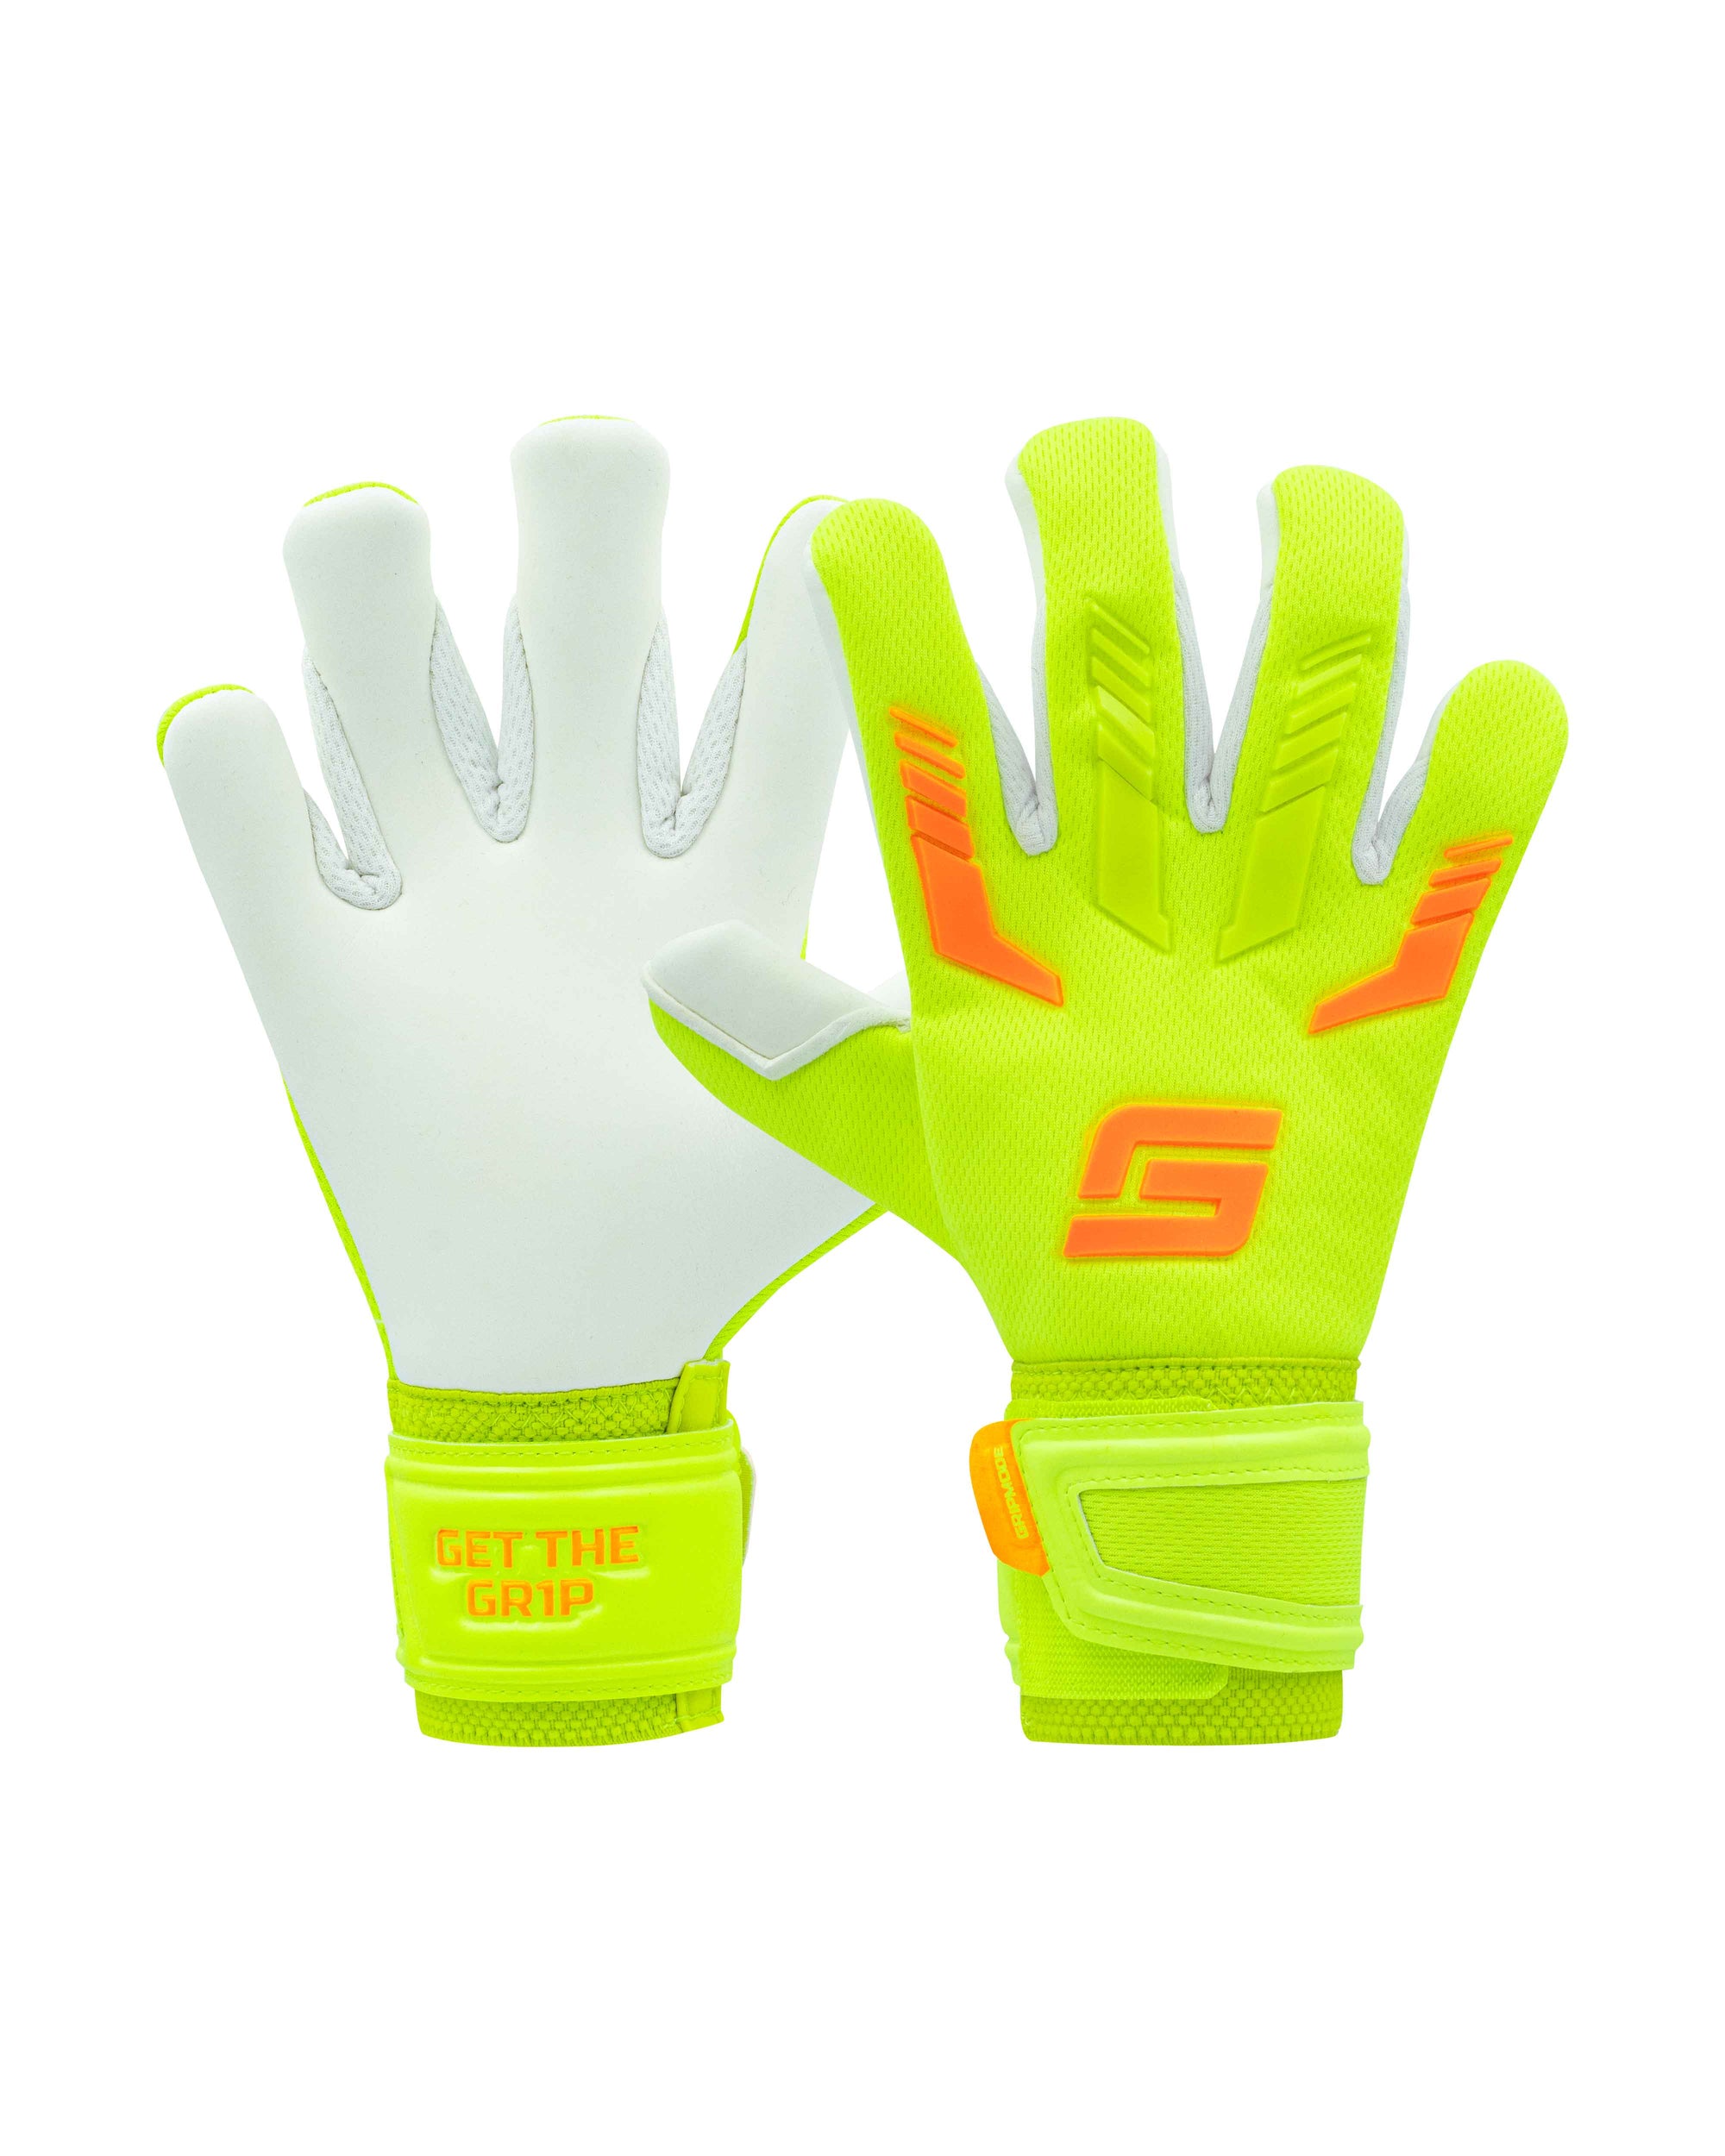 Gripmode Venom Junior 2.0 Goalkeeper gloves with hybrid cut for kids soccer and football